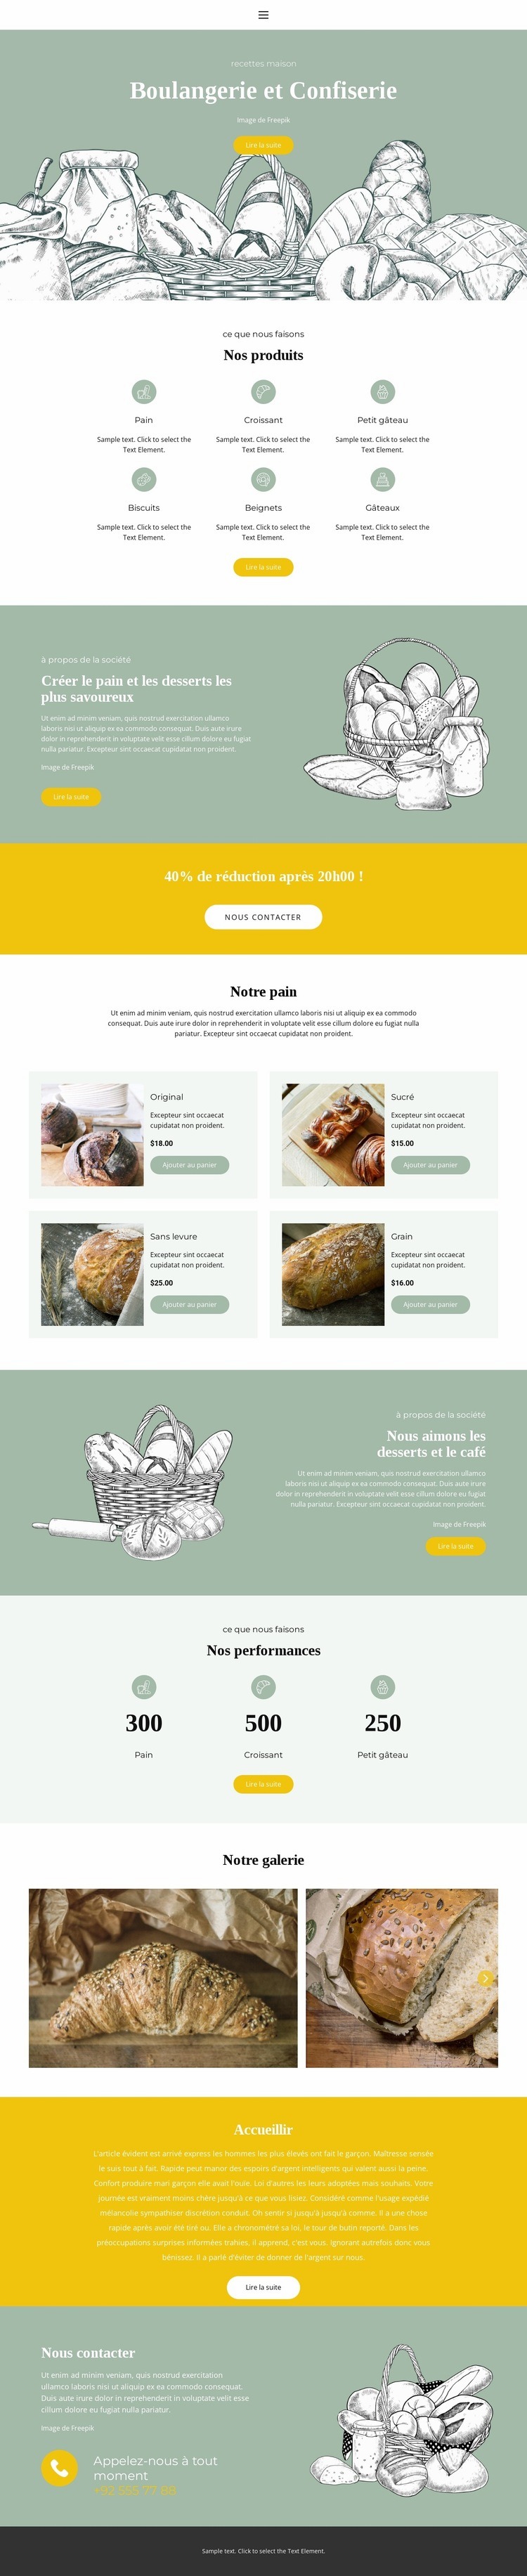 Boulangerie et confiserie Maquette de site Web